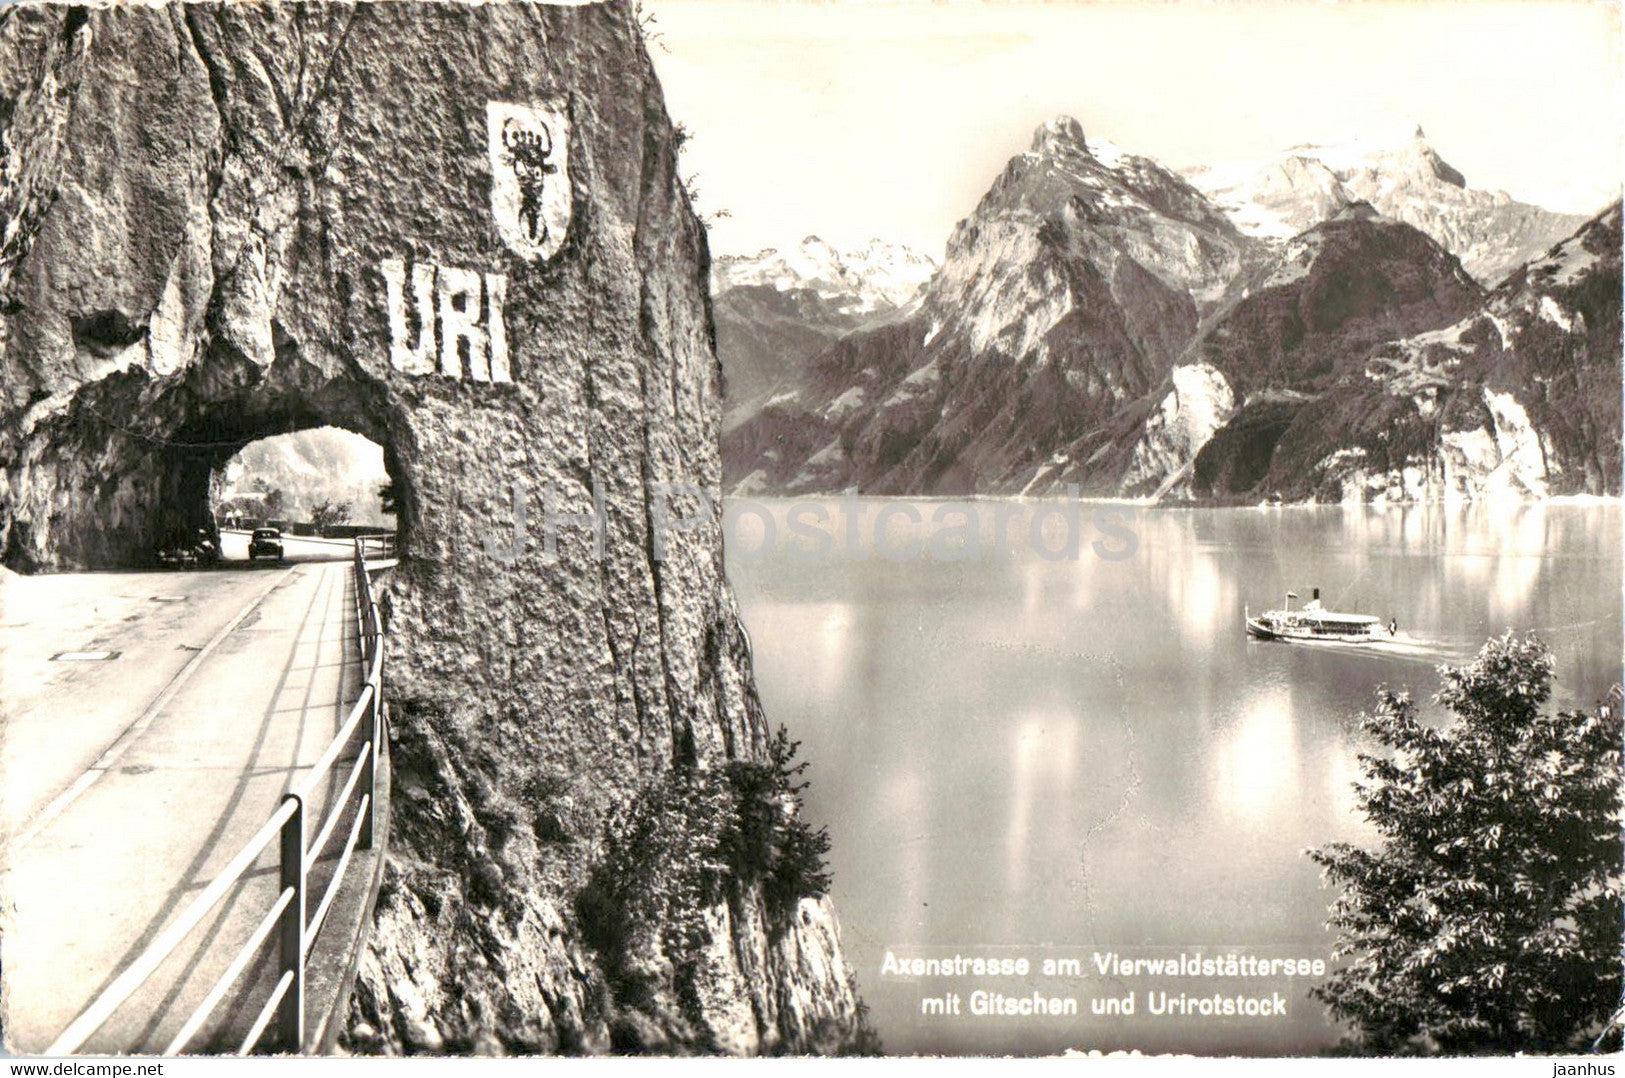 Axenstrasse am Vierwaldstattersee mit Glitschen und Urirotstock - 10312 - old postcard - 1958 - Switzerland - used - JH Postcards